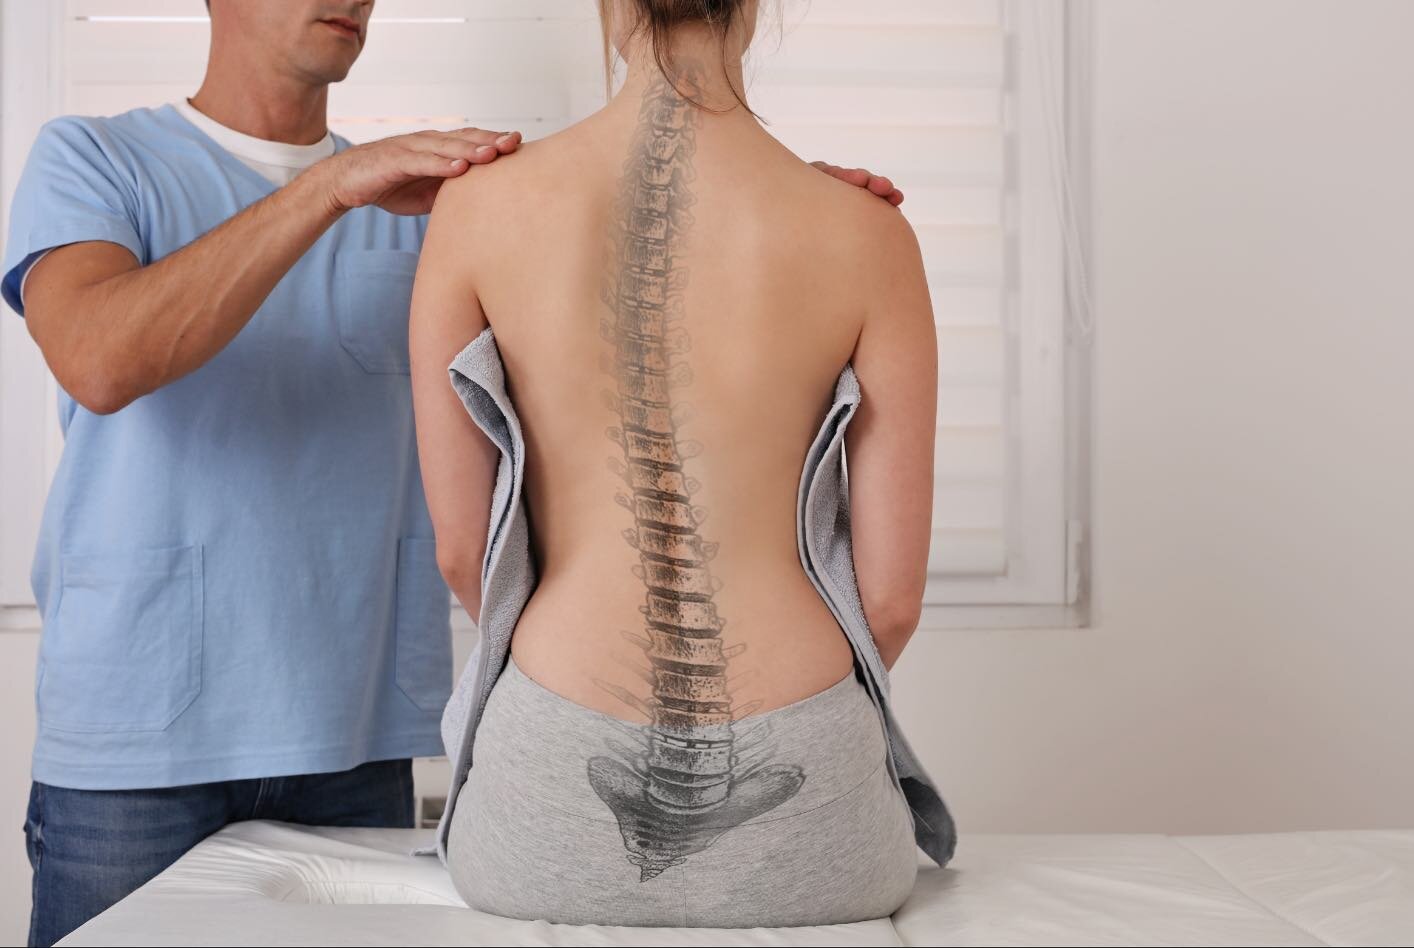 XYXZ Lordosenstütze für Die untere Lendenwirbelsäule Verstellbare Gurtstützen Frauen Männer Taille Rückenlage Knochenschmerzen Schmerzen Korsett 